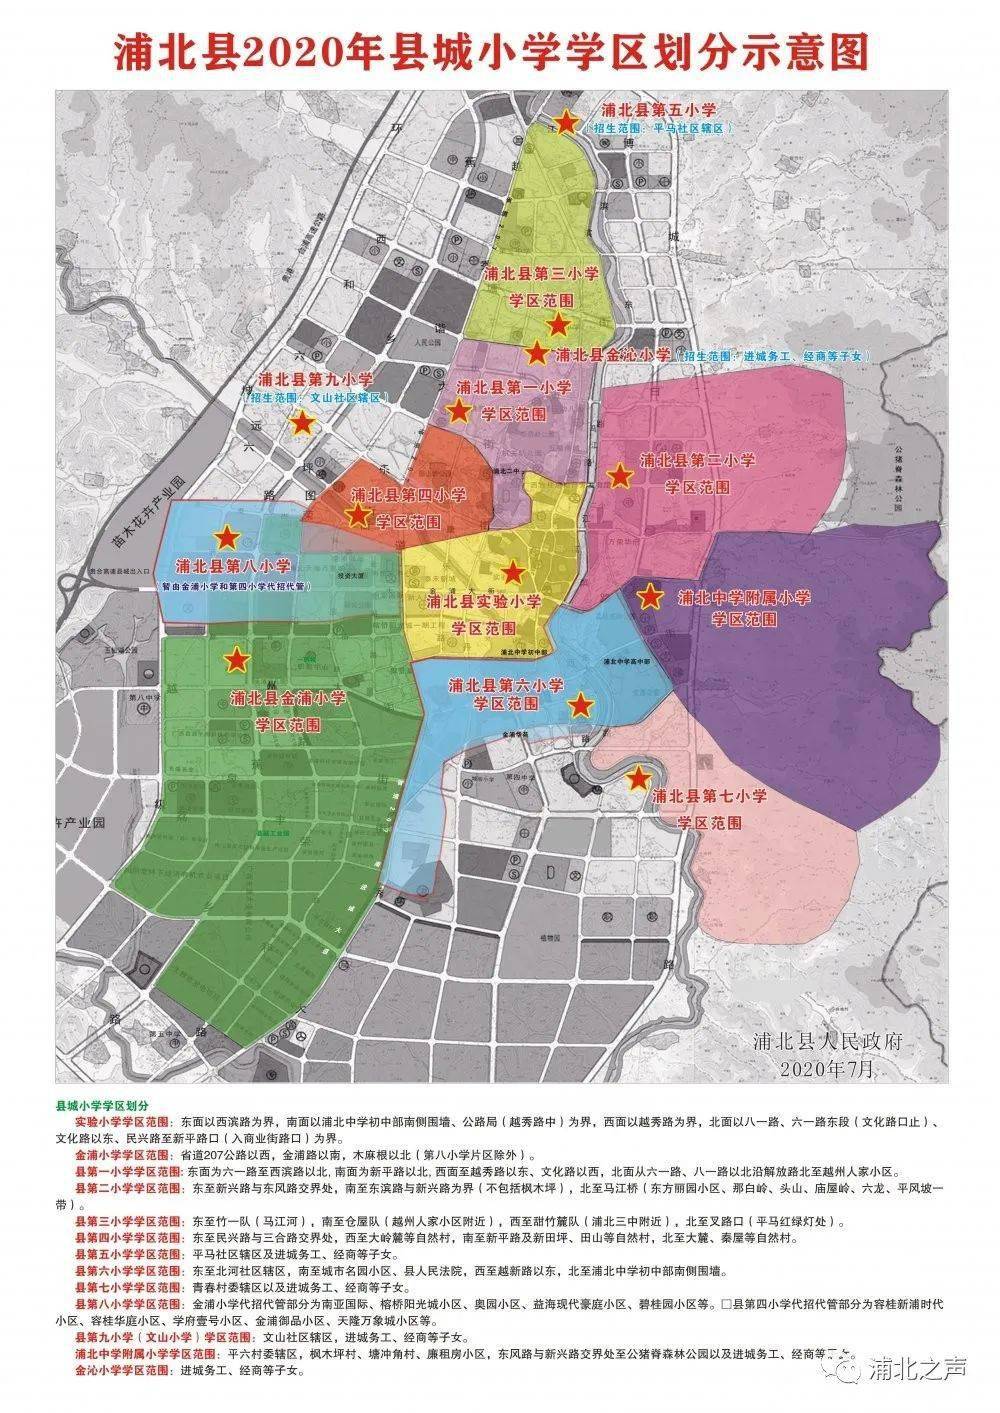 (2)县城小学学区划分